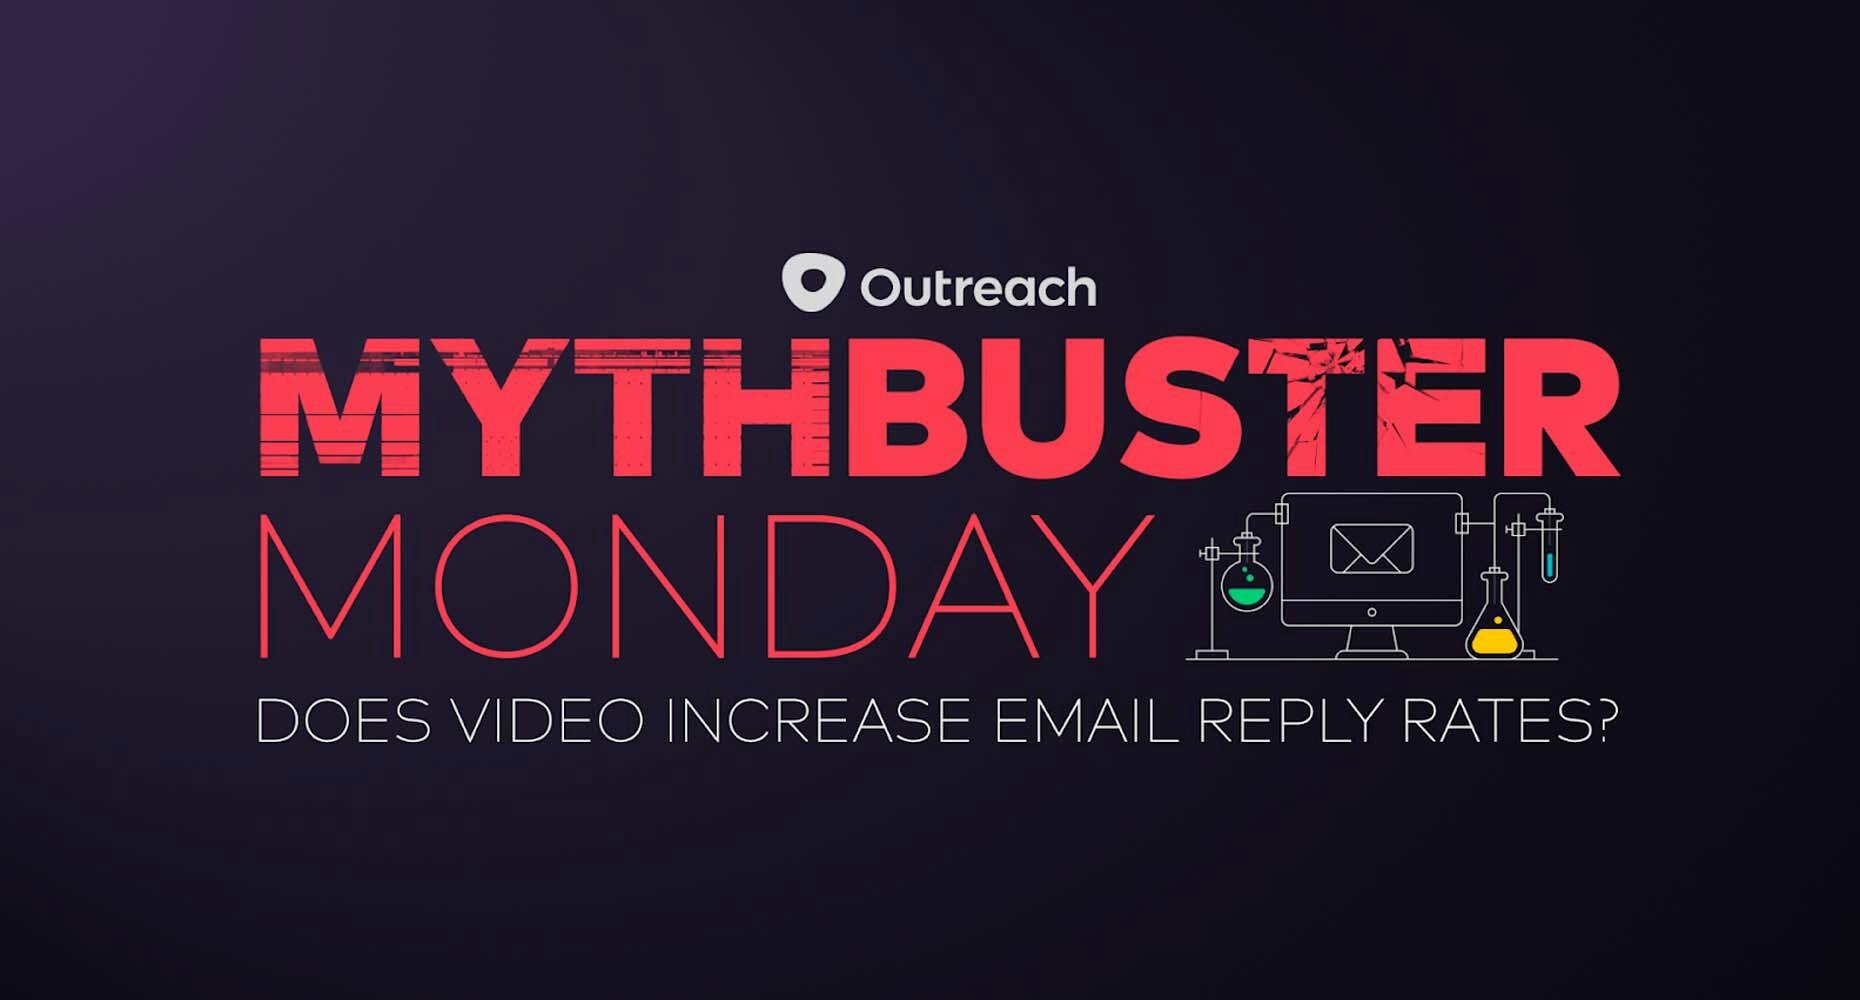 mythbuster monday logo and thumbnail